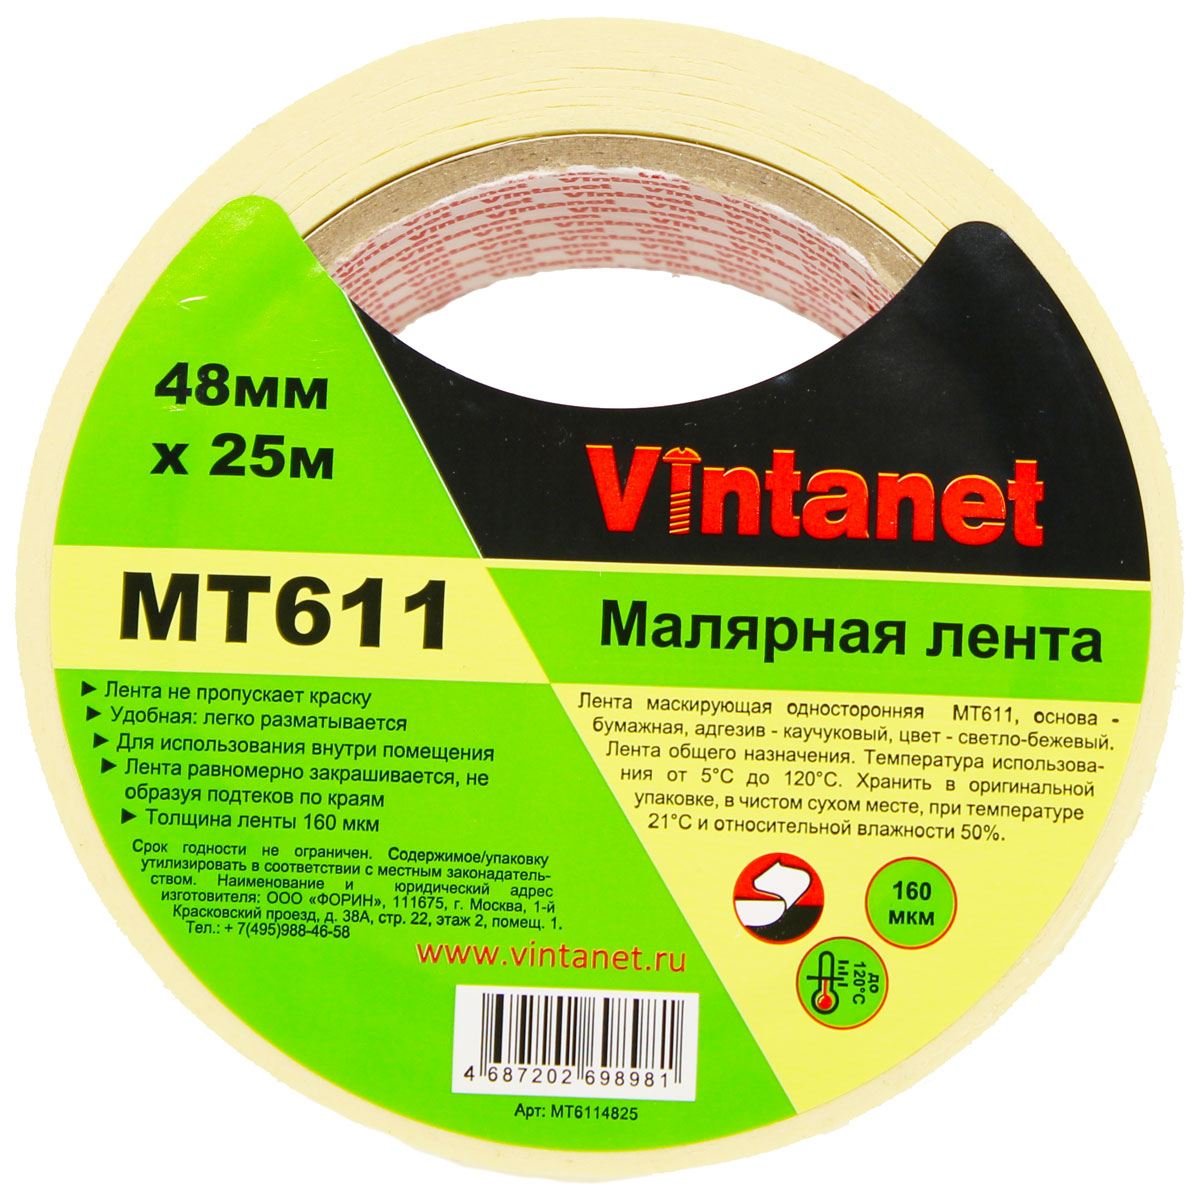 Лента малярная высокотемпературная Vintanet MT611, 120 С, 160 мкм, 48мм х 25м, MT6114825